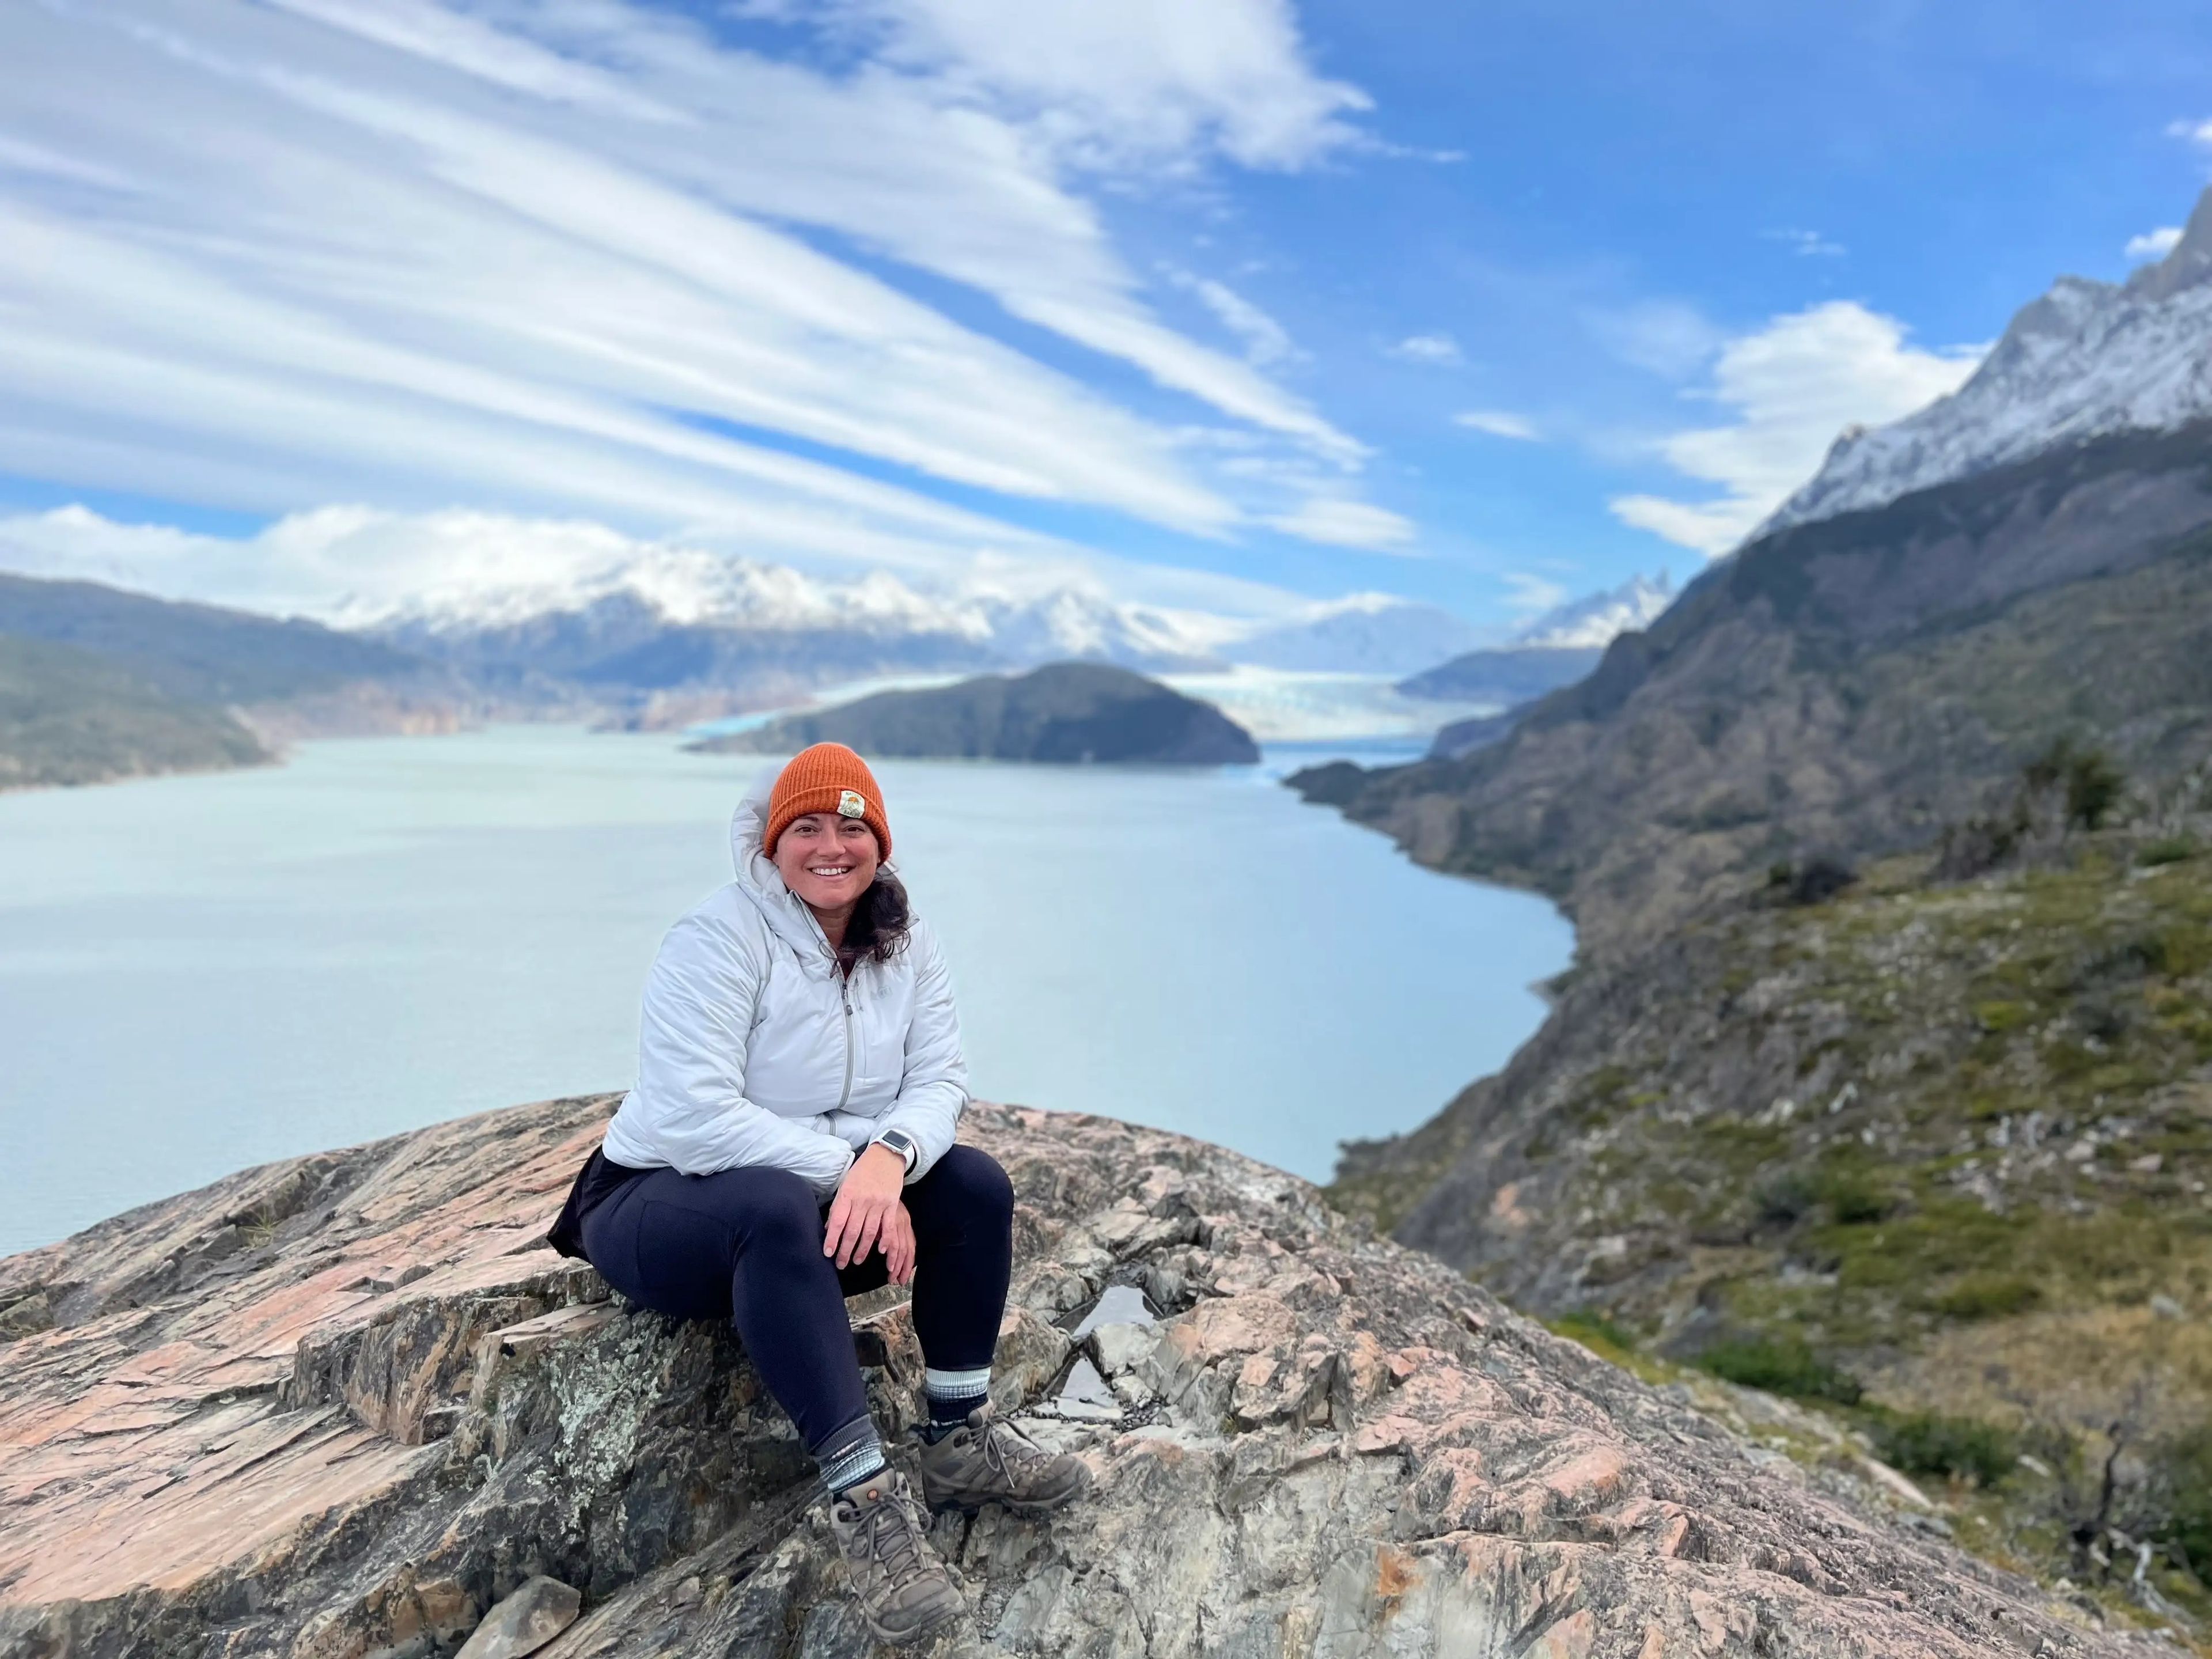 Author Abbie Synan trekking through Patagonia